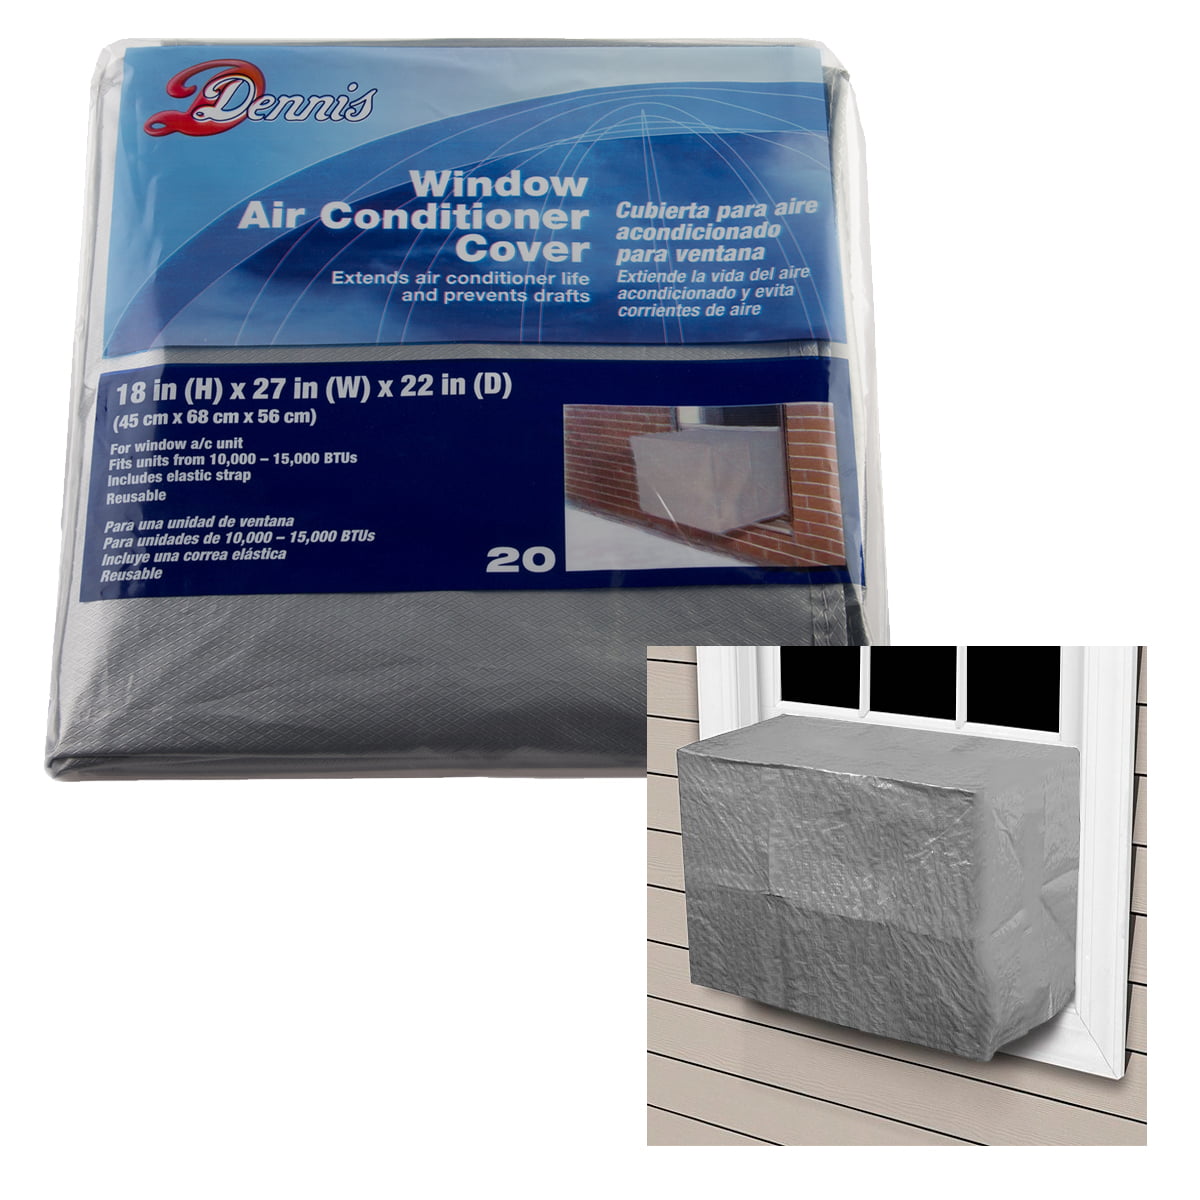 Dennis Outdoor Window Unit Air Conditioner Cover 20 Medium ...